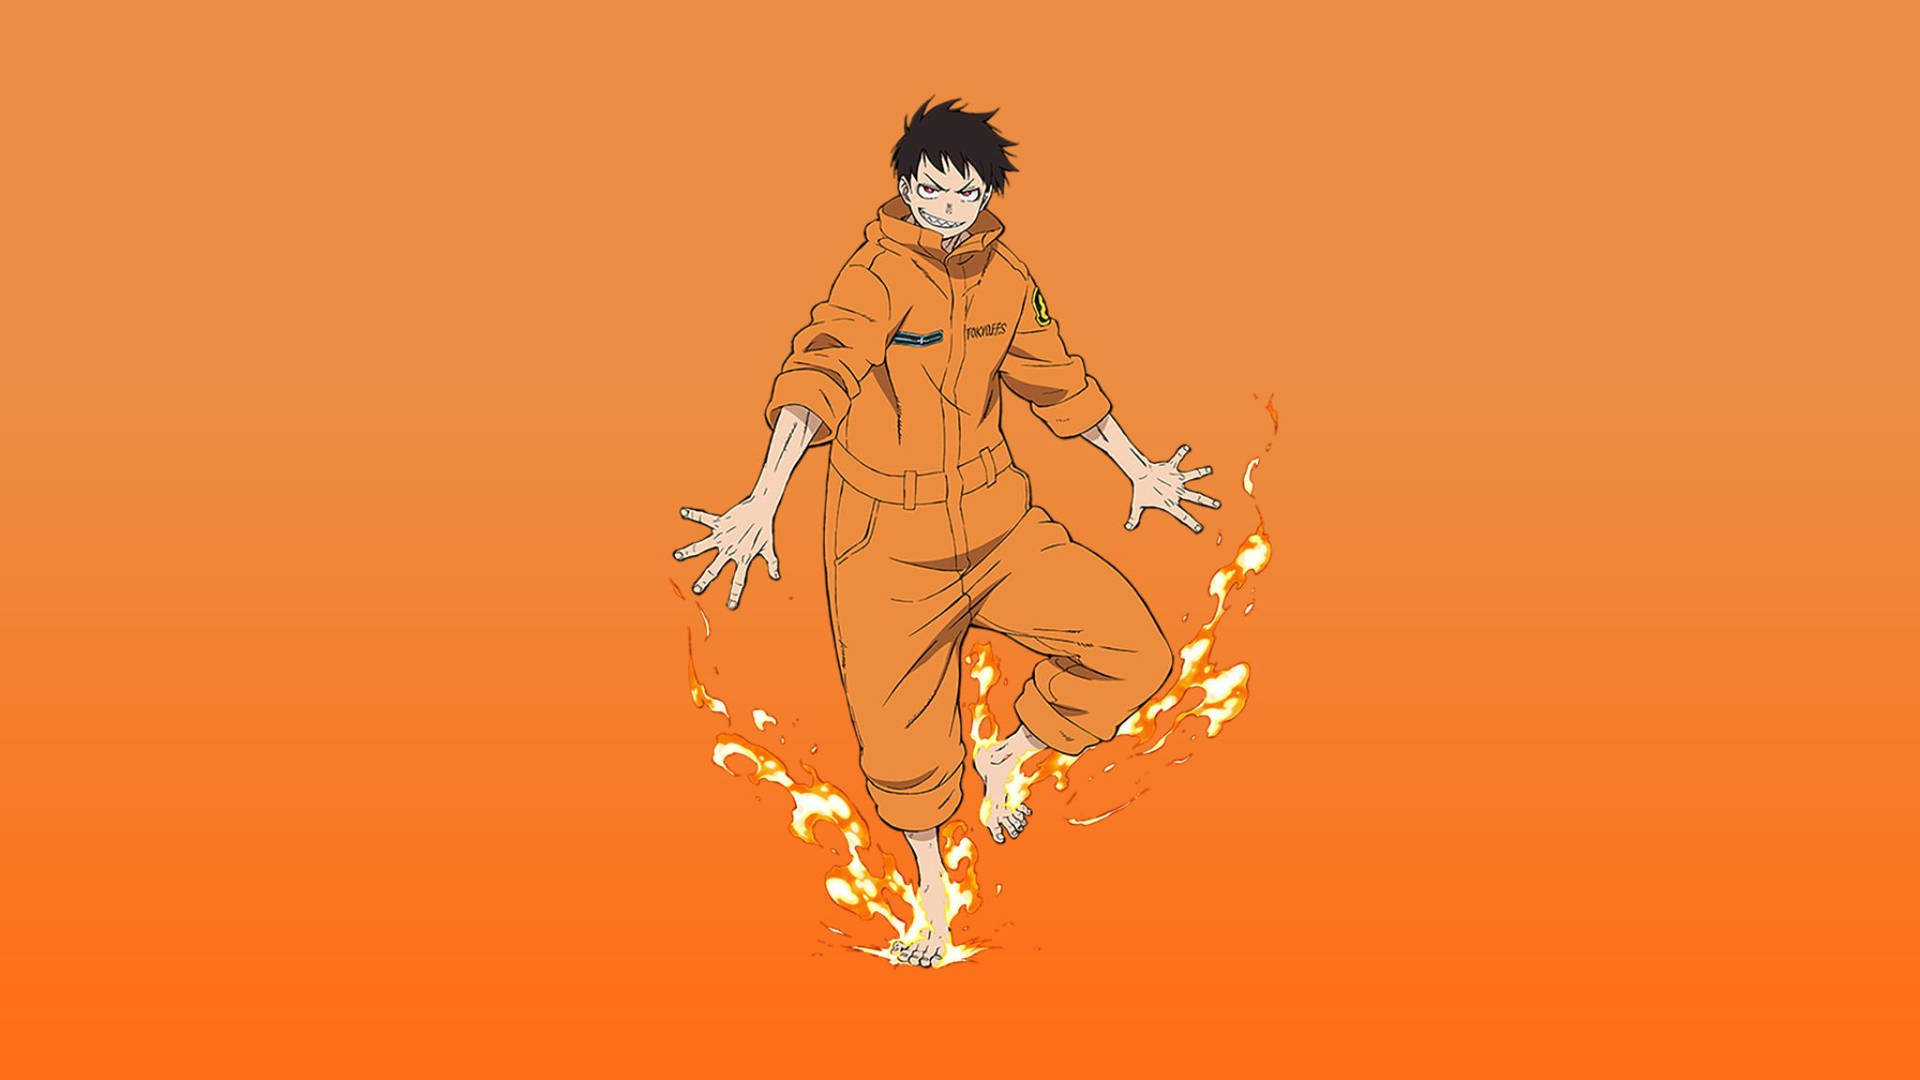 Tapettill Dator Eller Mobil: Minimalistisk Shinra Fire Anime. Wallpaper